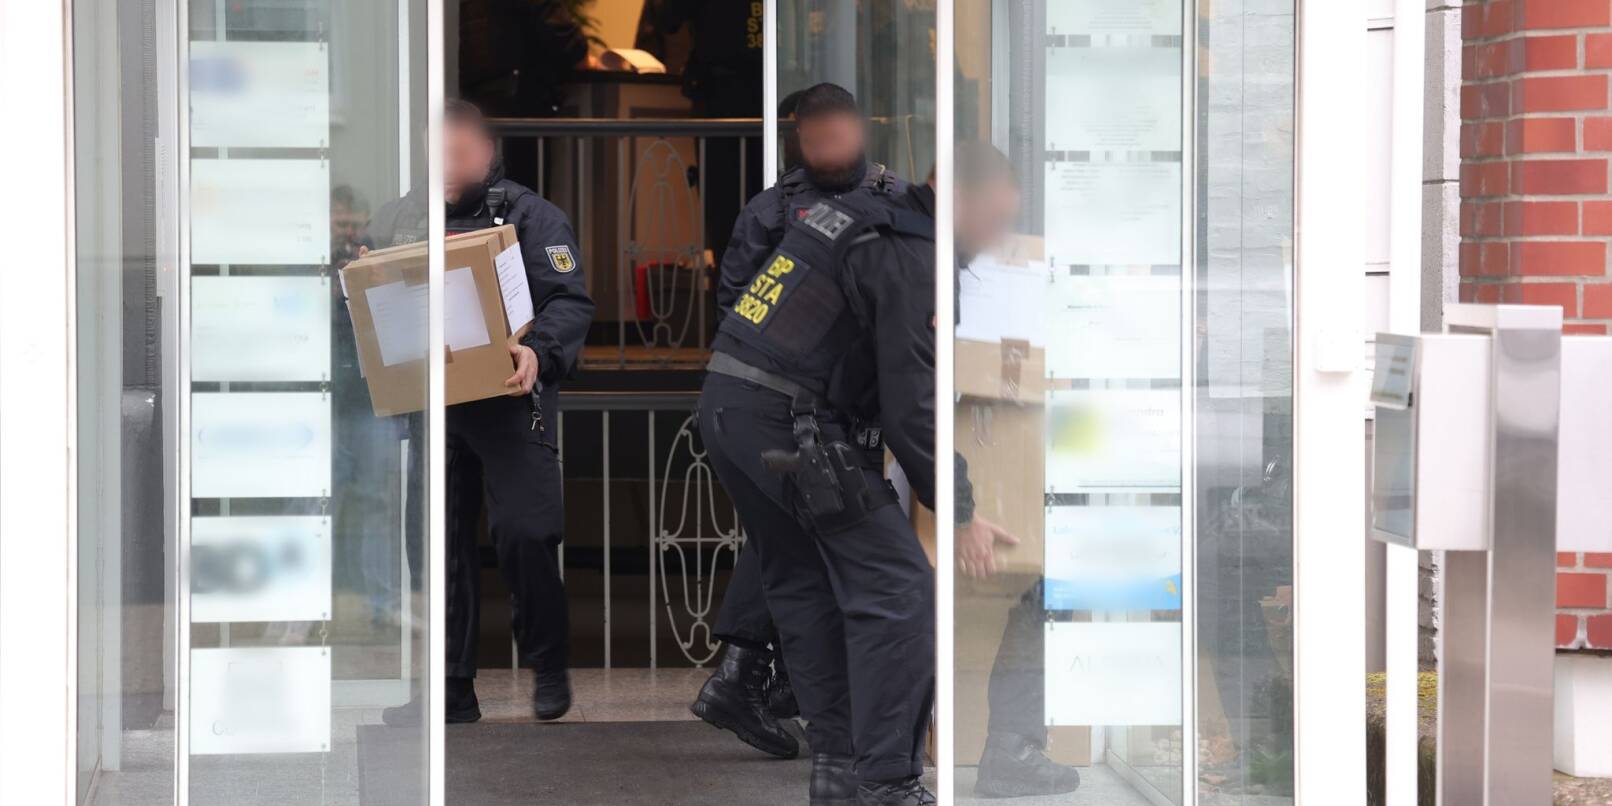 Polizeibeamte tragen in Kartons sichergestelltes Material aus einem Gebäude.